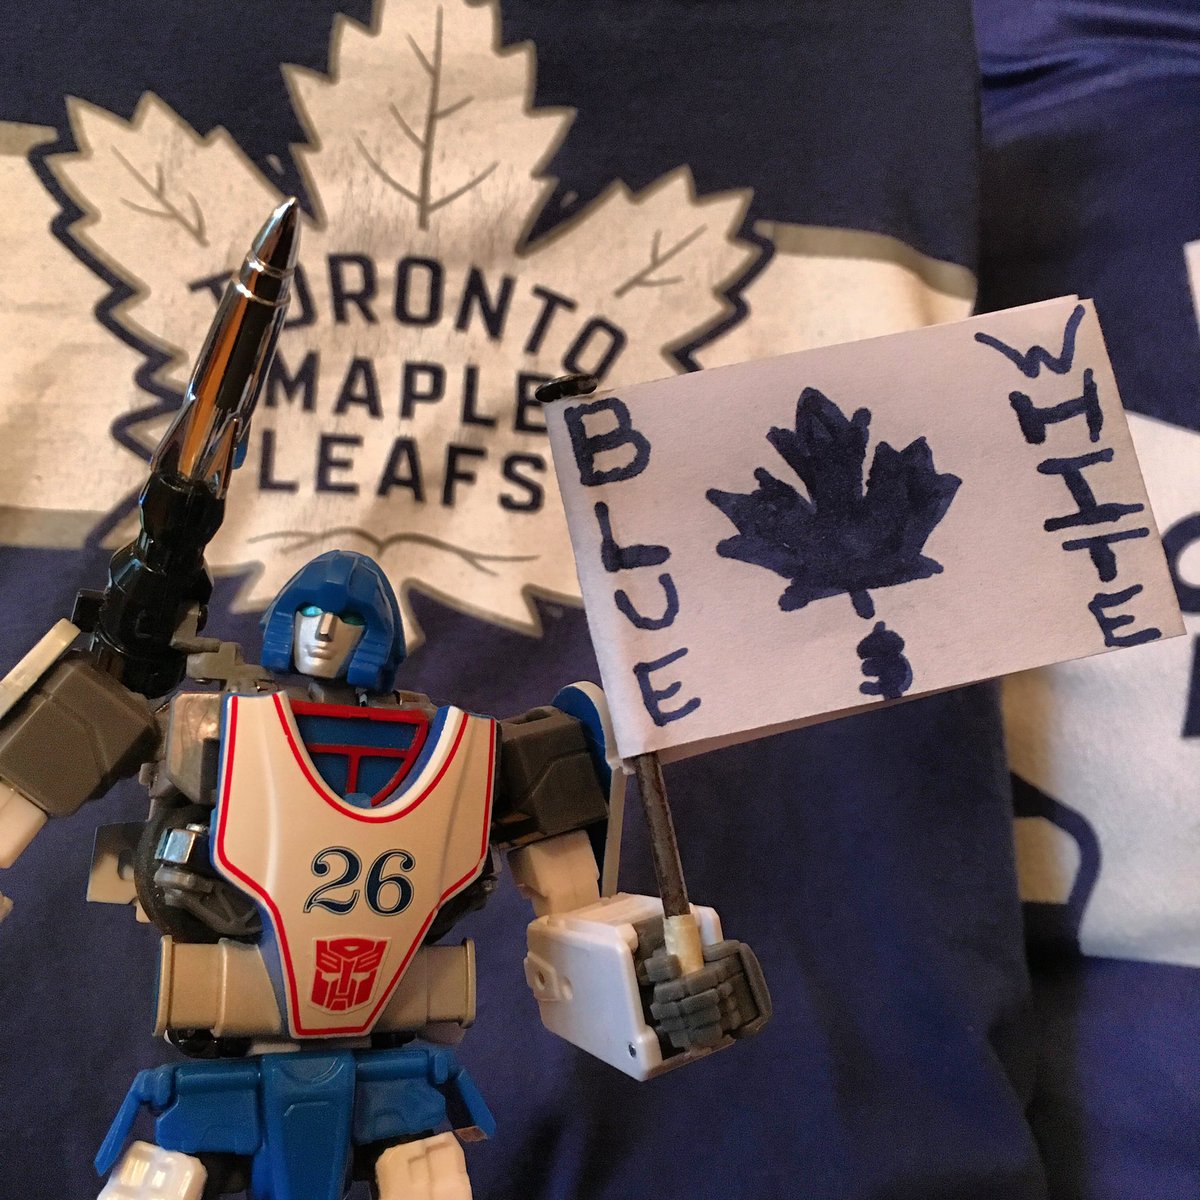 GO LEAFS!! 

#TorontoMapleLeafs #Transformers